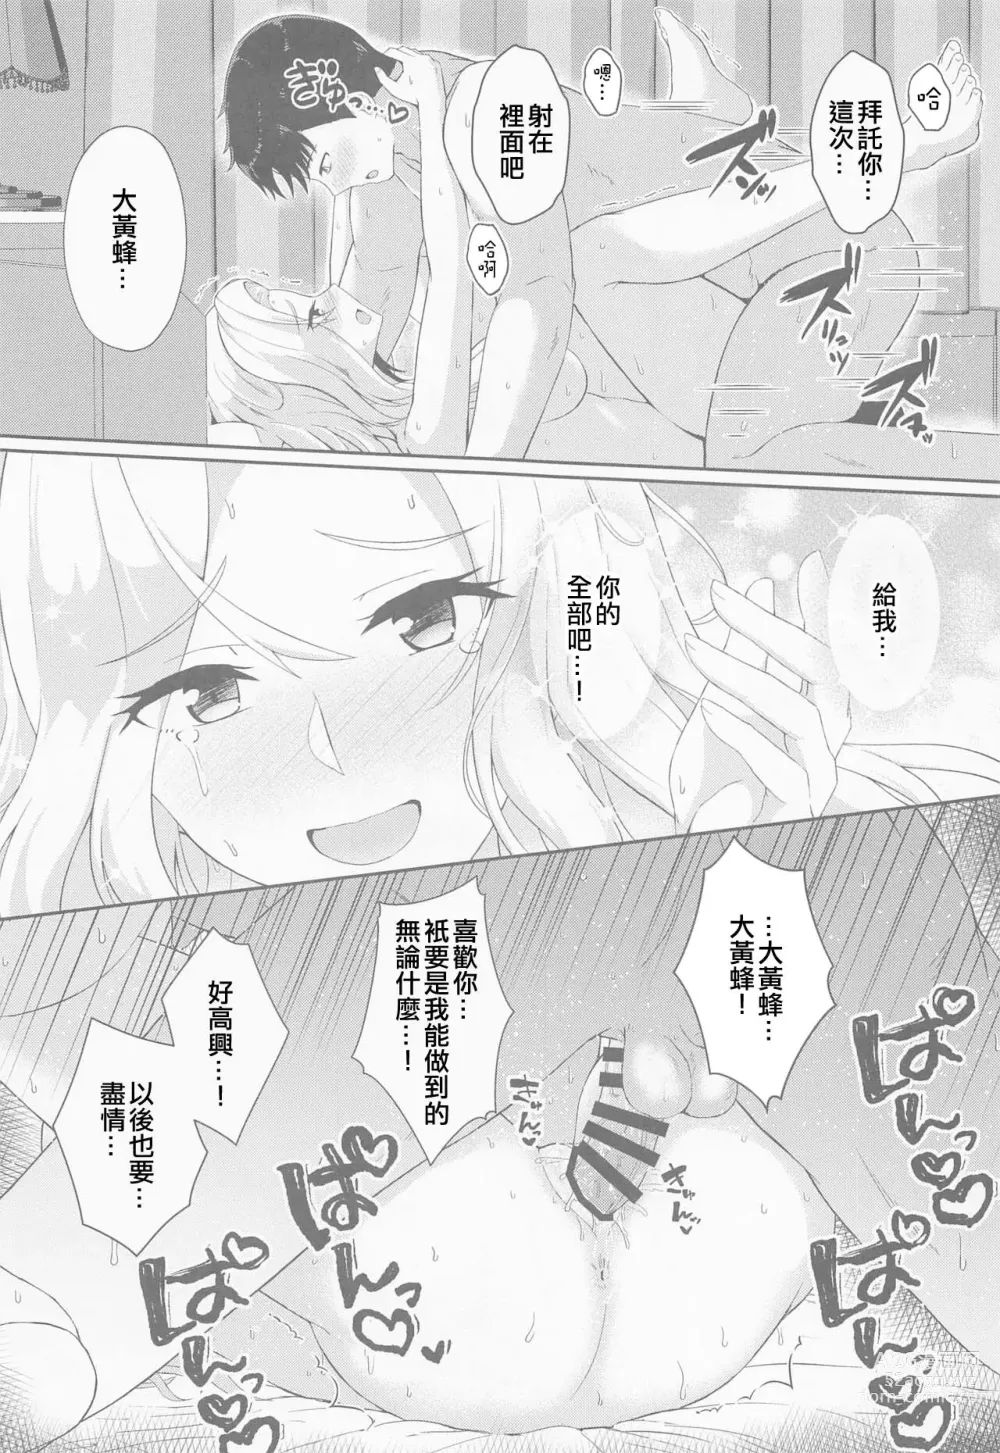 Page 22 of doujinshi Koi suru Hishokan Hornet - The secretary ship in love, Hornet